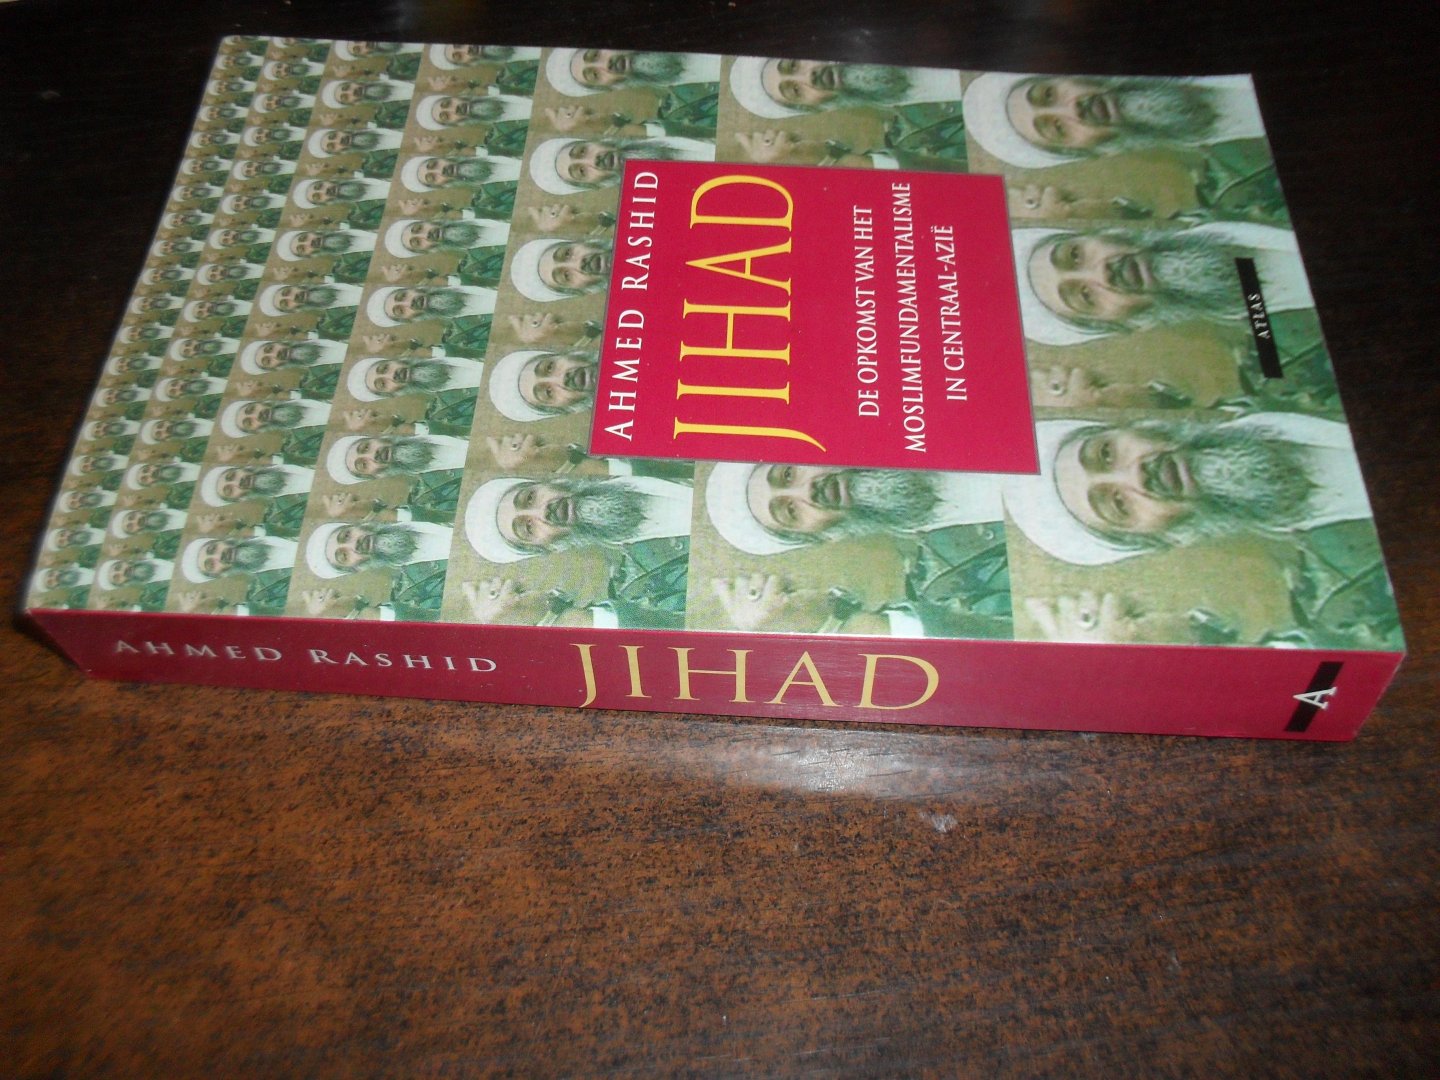 Rashid, Ahmed - Jihad   De opkomst van het moslimfundamentalisme in Centraal-Azie